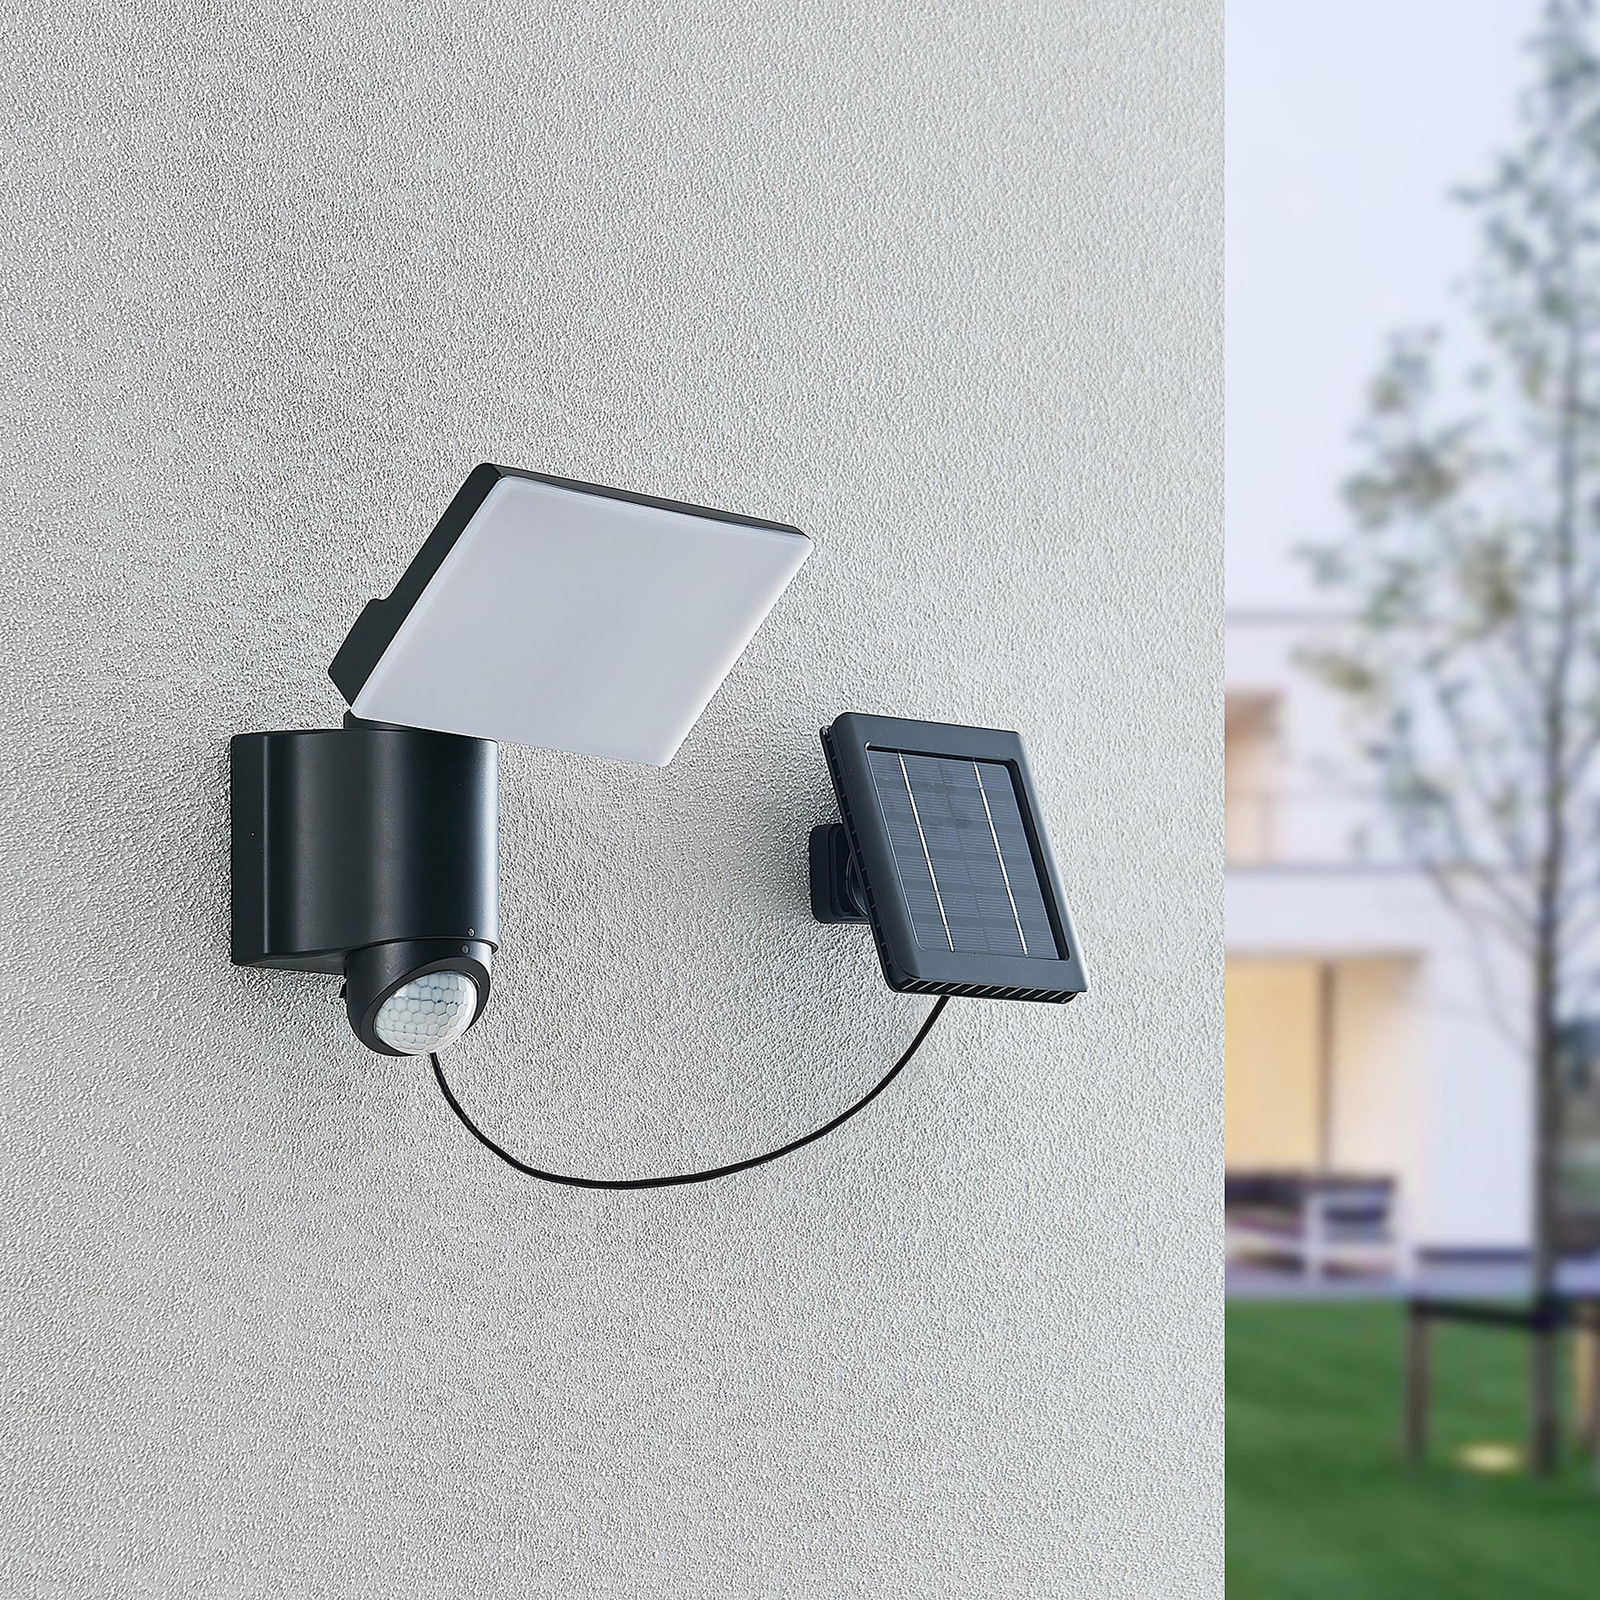 Prios Istani LED-Außenwandstrahler, Sensor, Solar